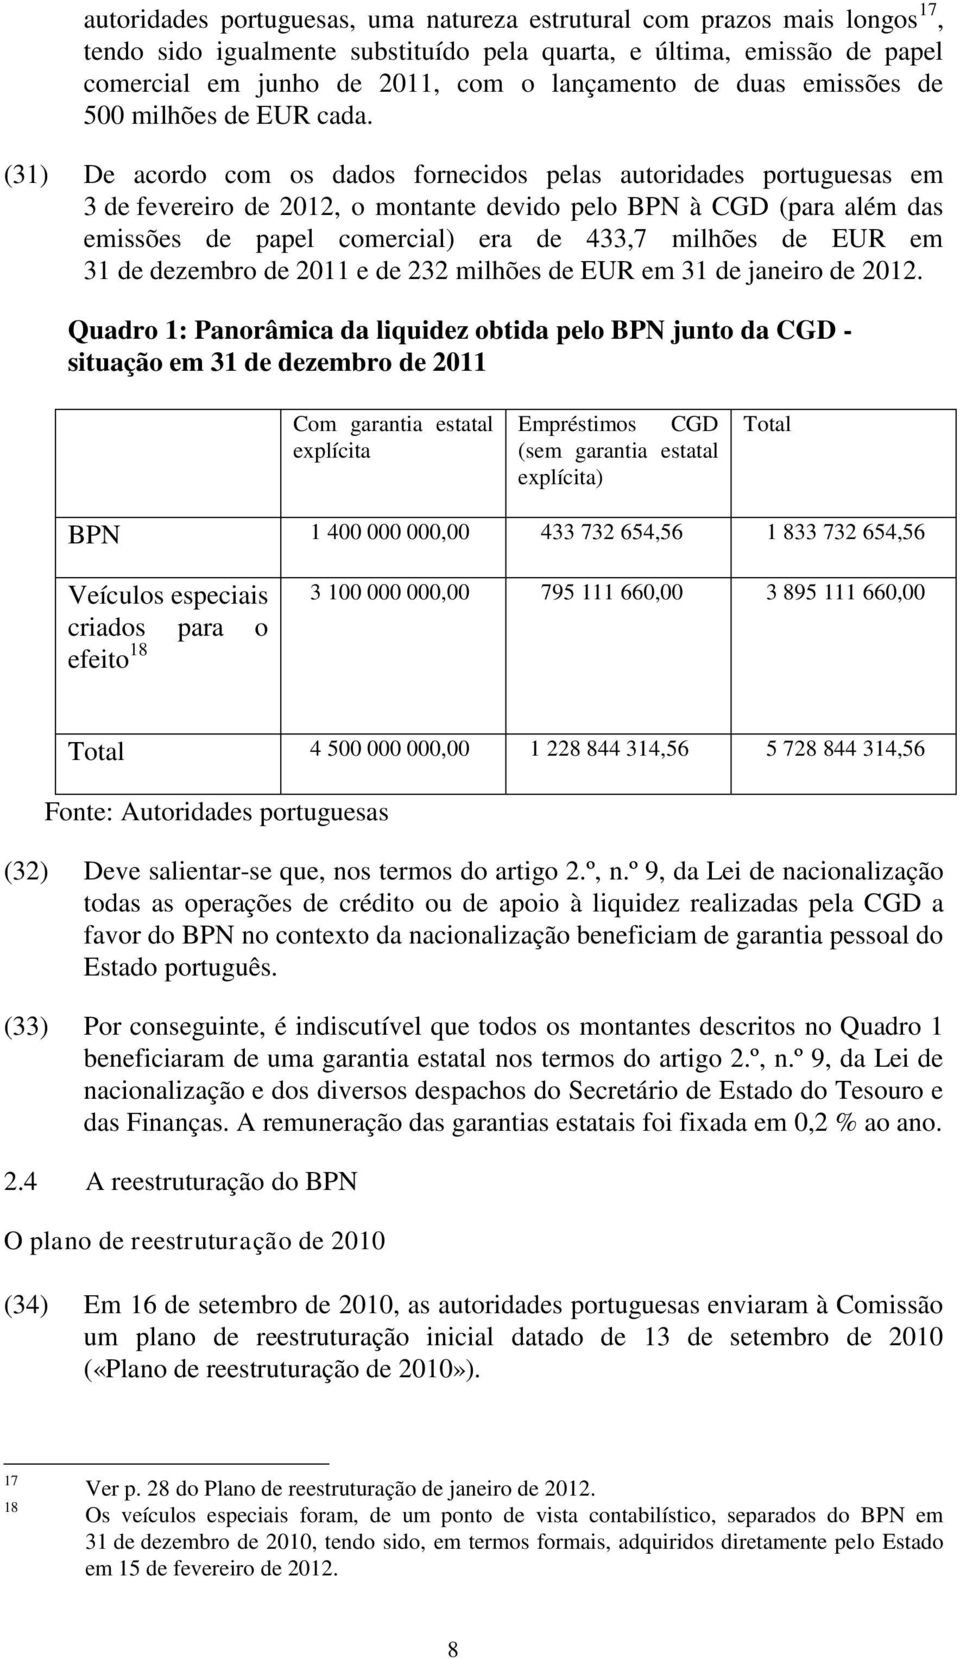 (31) De acordo com os dados fornecidos pelas autoridades portuguesas em 3 de fevereiro de 2012, o montante devido pelo BPN à CGD (para além das emissões de papel comercial) era de 433,7 milhões de